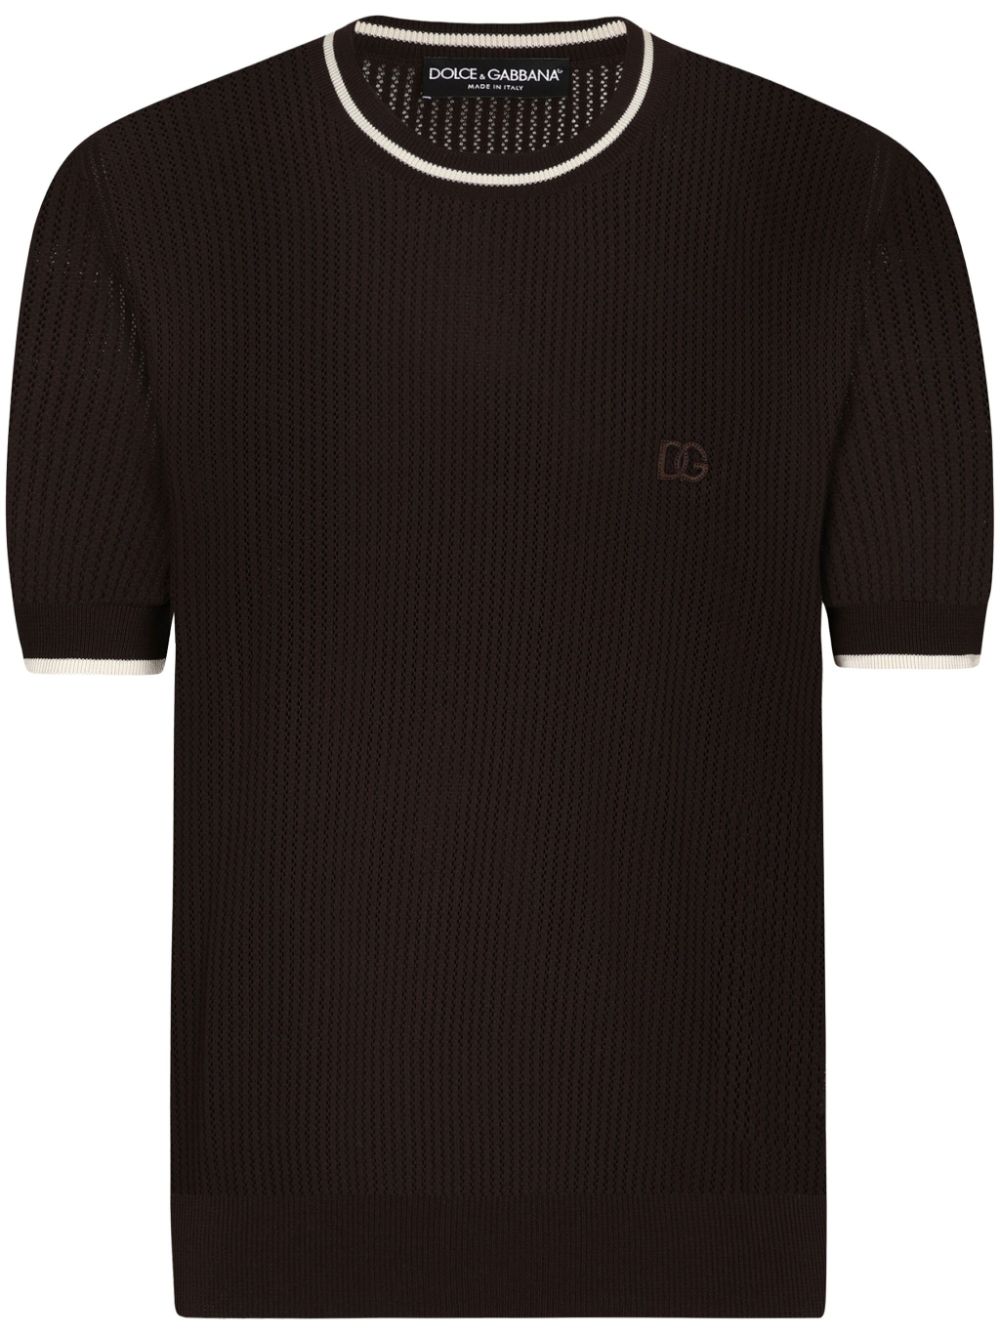 Dolce & Gabbana DG-logo cotton T-shirt - Brown von Dolce & Gabbana